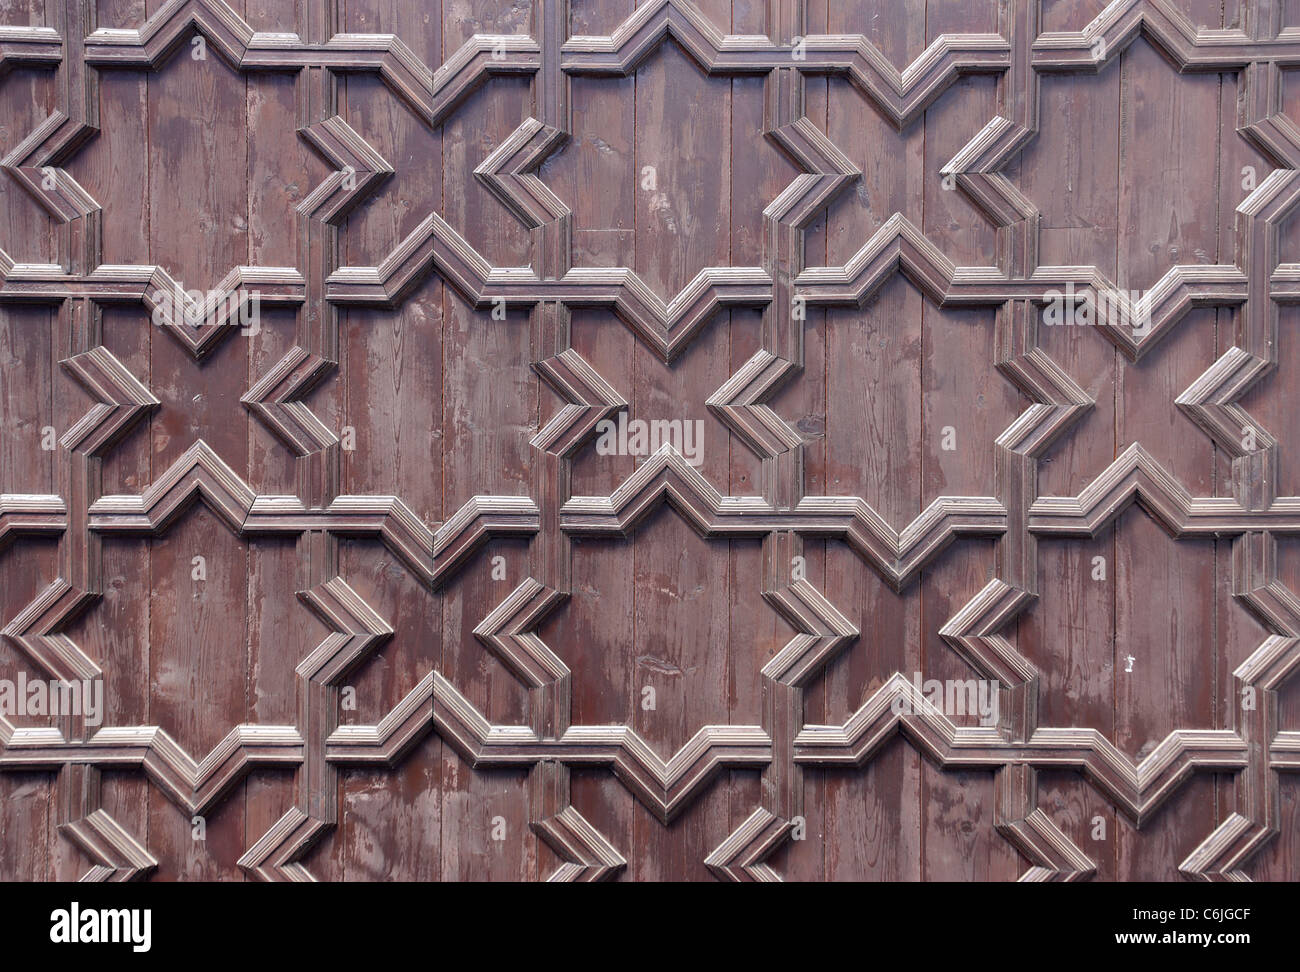 Dettaglio del tetto della piazza di Spagna a Siviglia, composto da esagoni in legno fatti a mano e ceramiche. Foto Stock